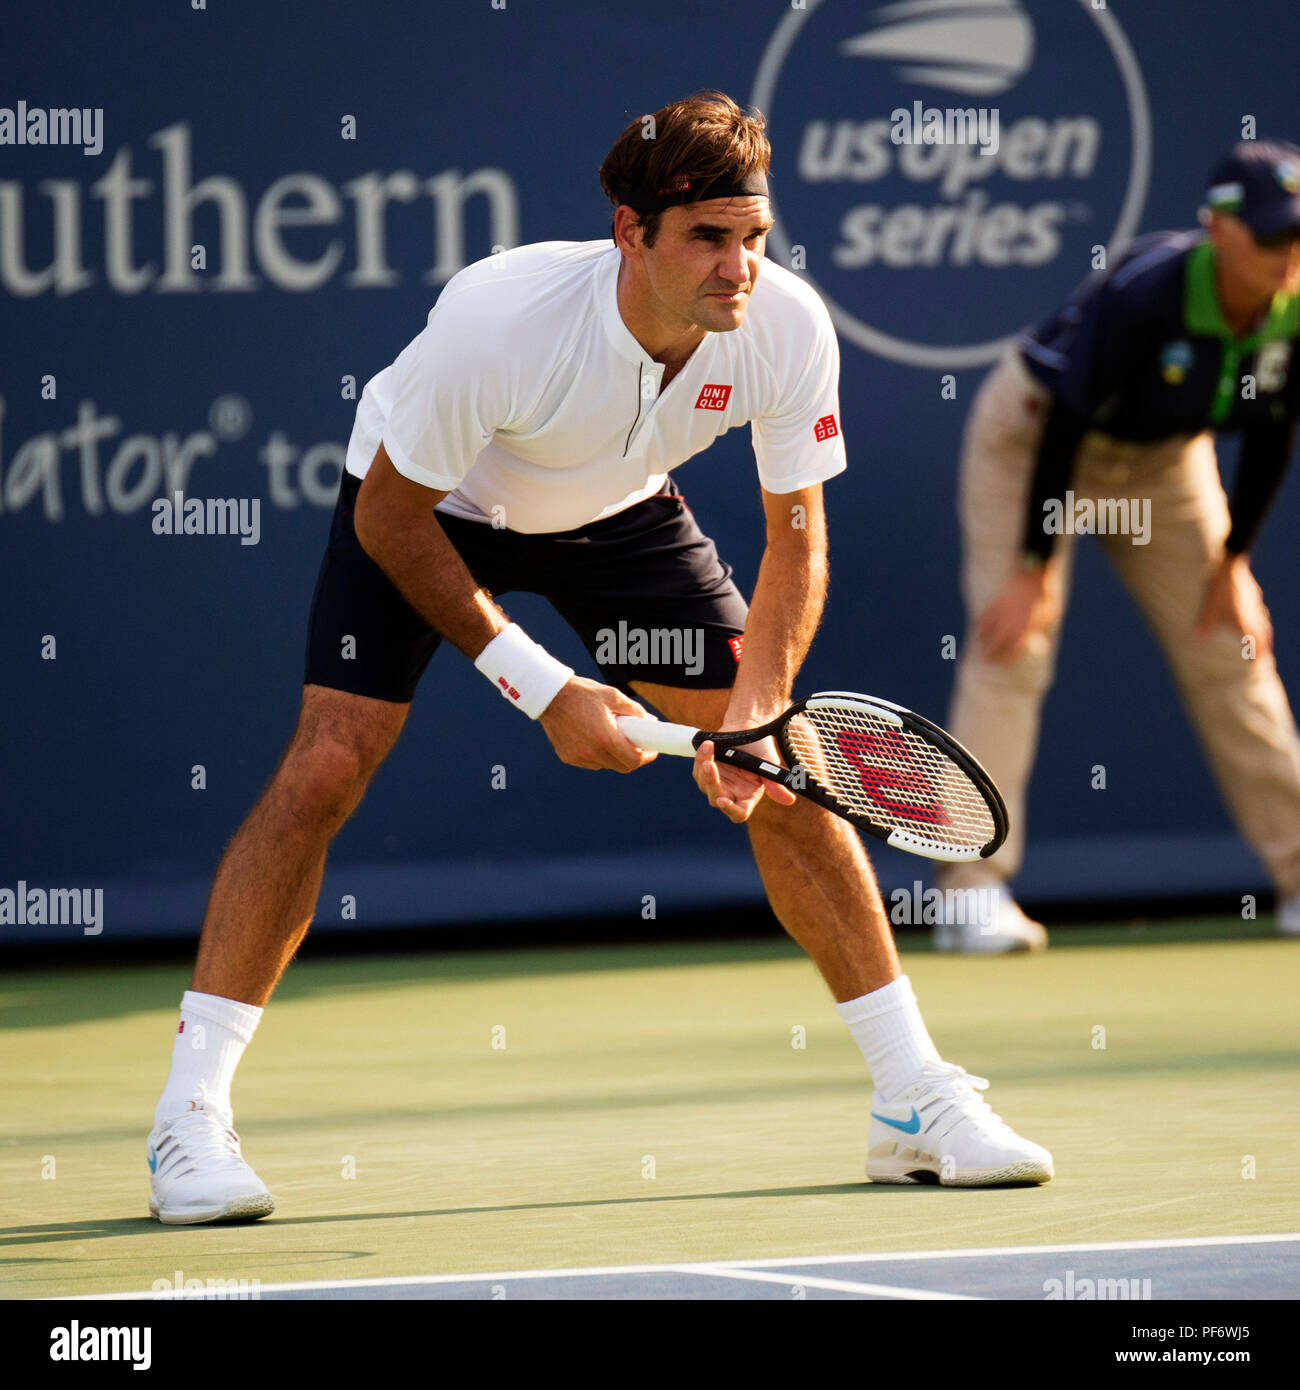 Mason, Ohio, USA. 19 août 2018 : Roger Federer (SUI) prépare lui-même contre Novak Djokovic (SRB) à la région du sud-ouest de l'ouvrir à Mason, Ohio, USA. Brent Clark/Alamy Live News Banque D'Images